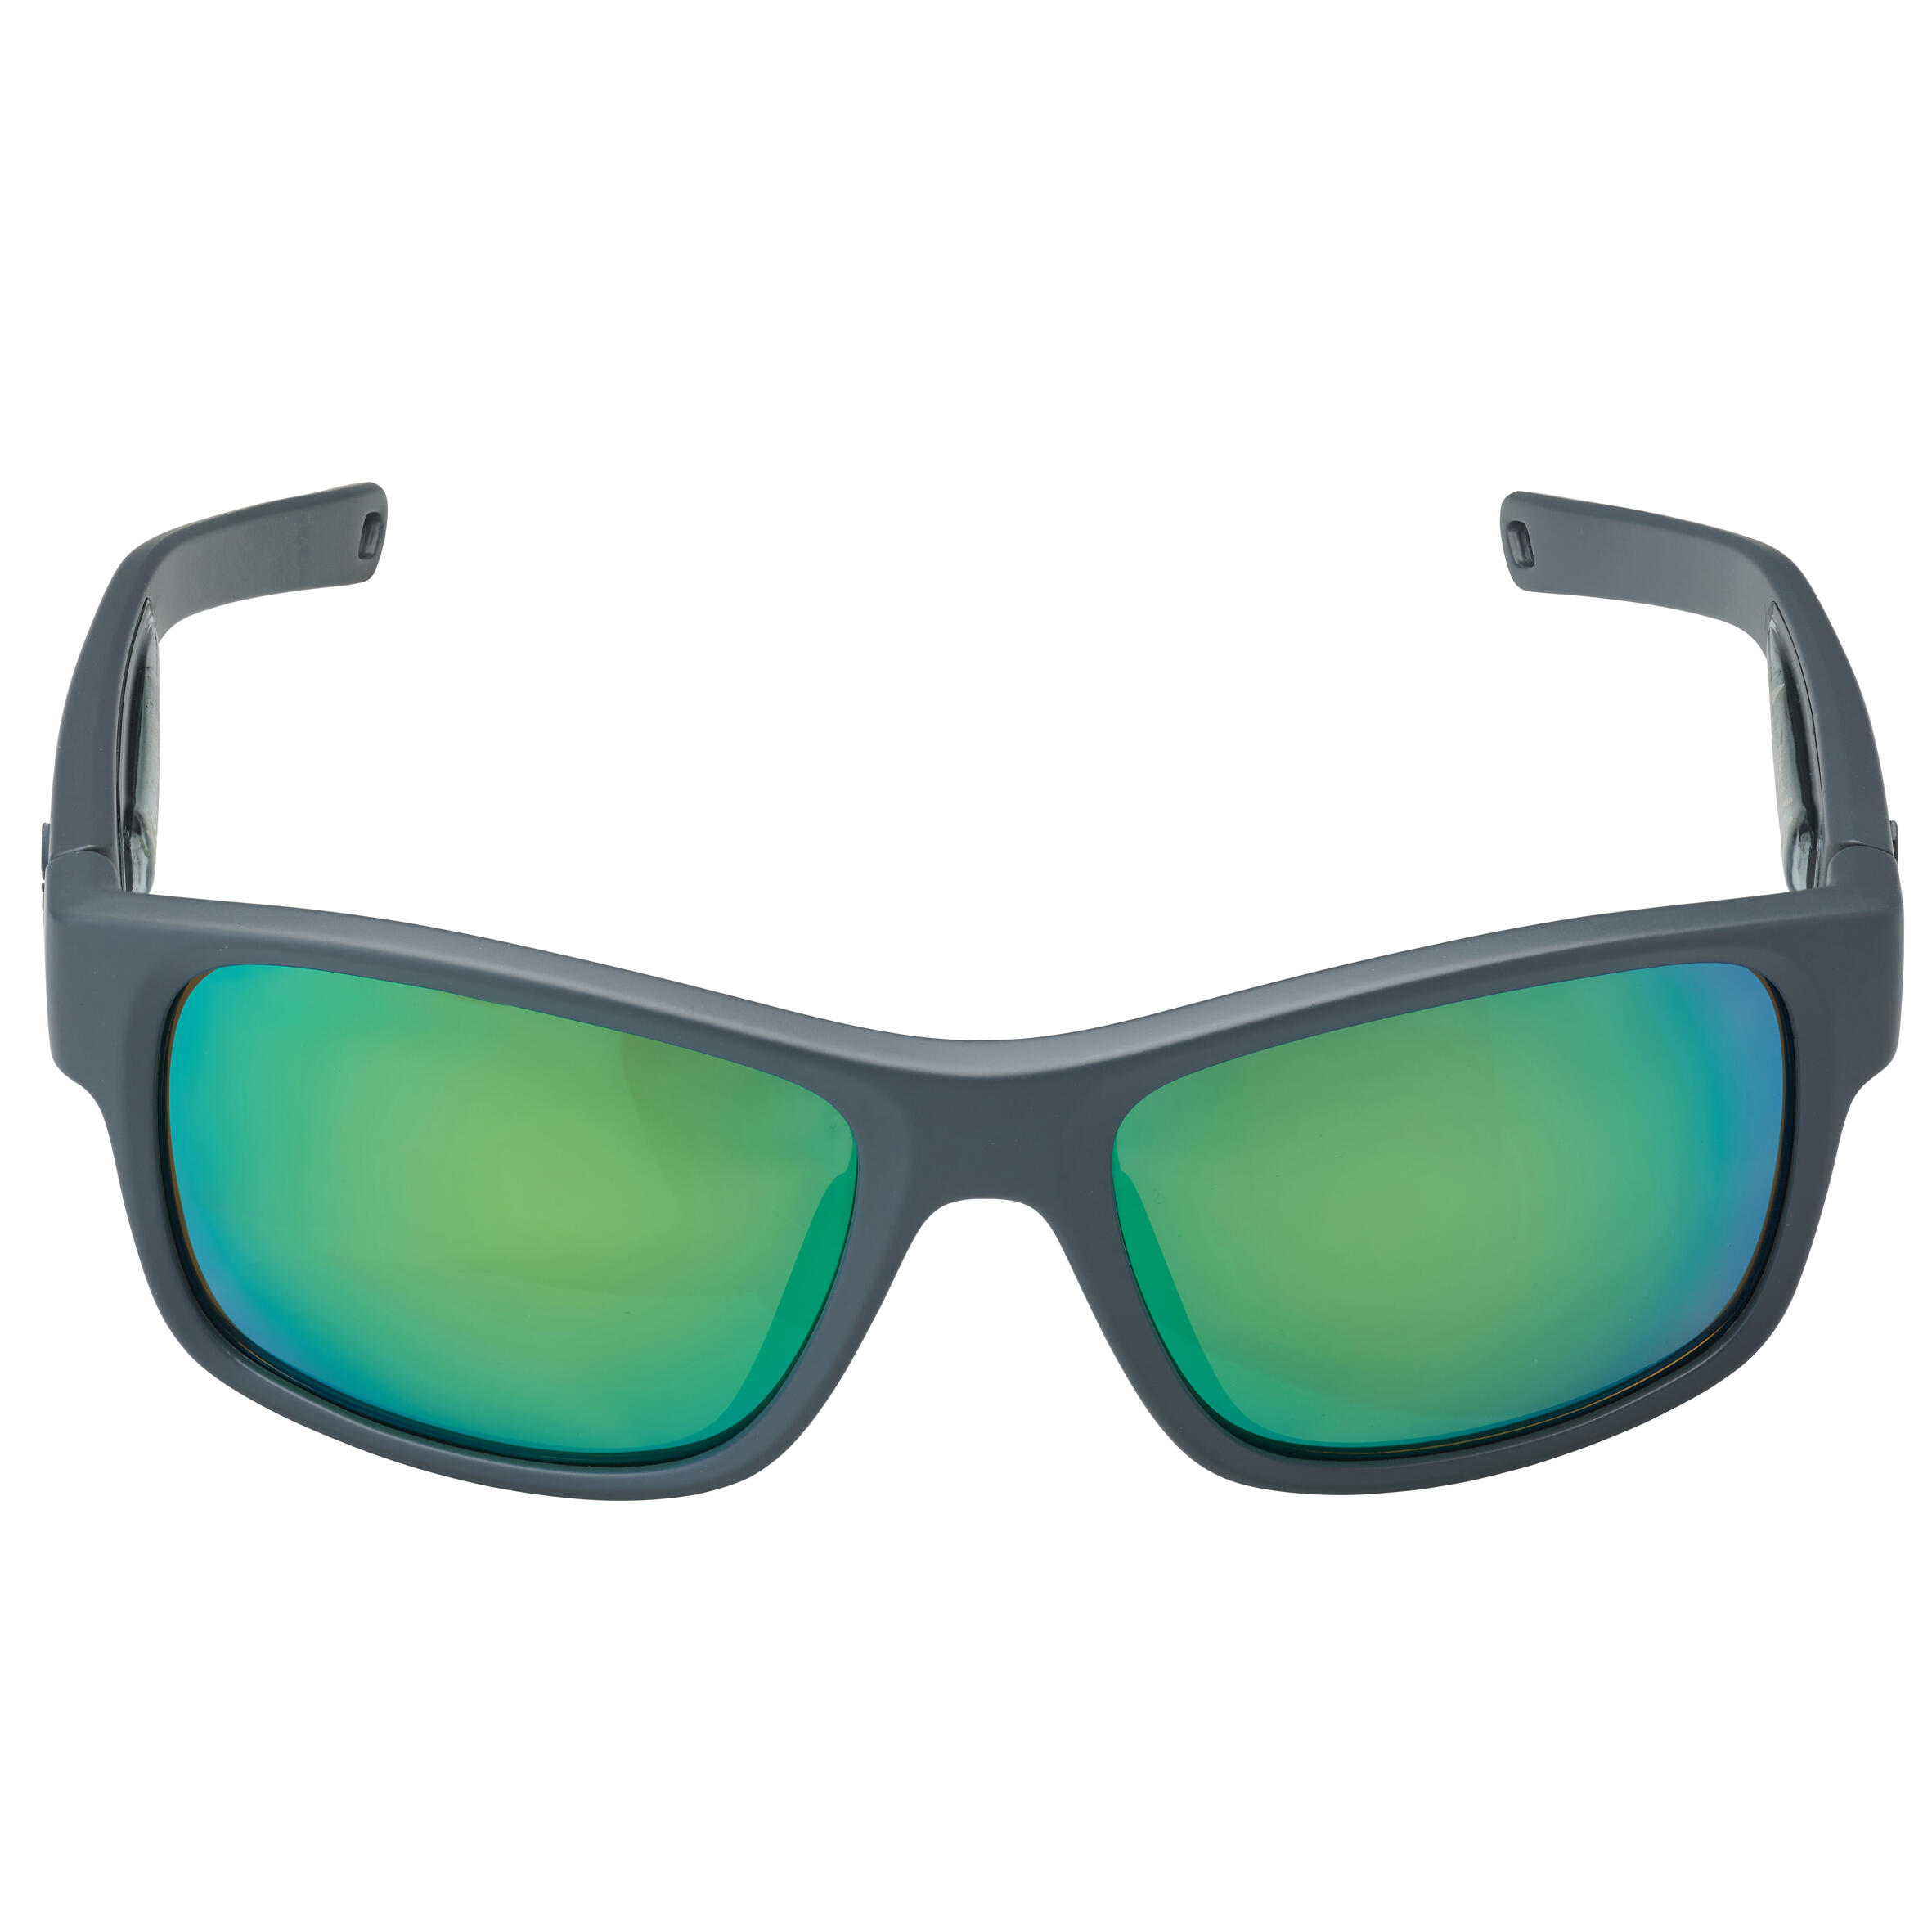 Fishing polarised floating sunglasses - FG 500 - Grey 4/6